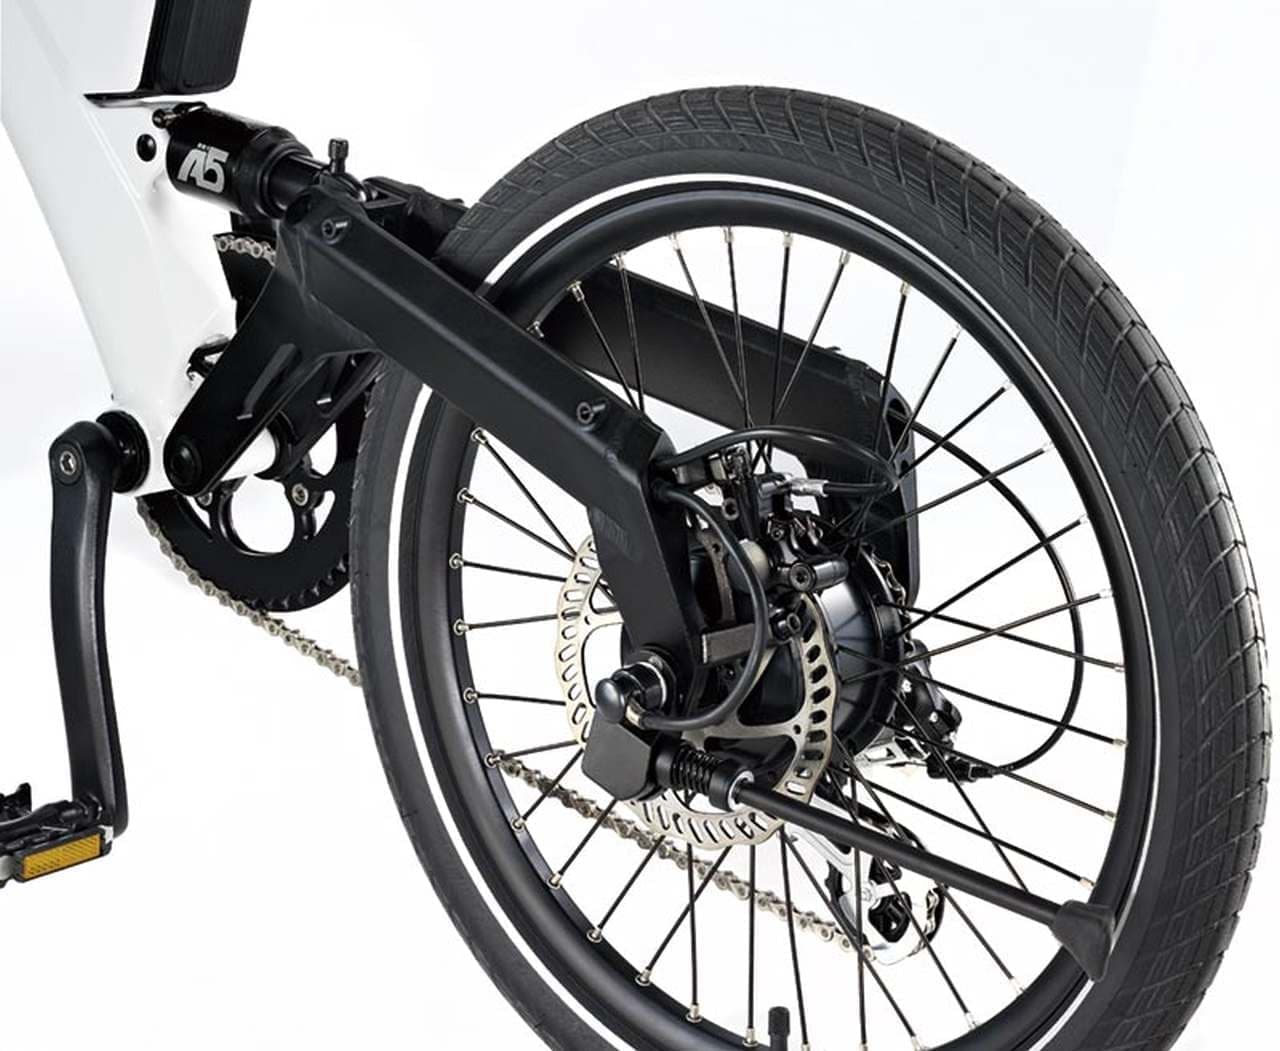 BESVの電動アシスト自転車PSシリーズに2019年限定カラー